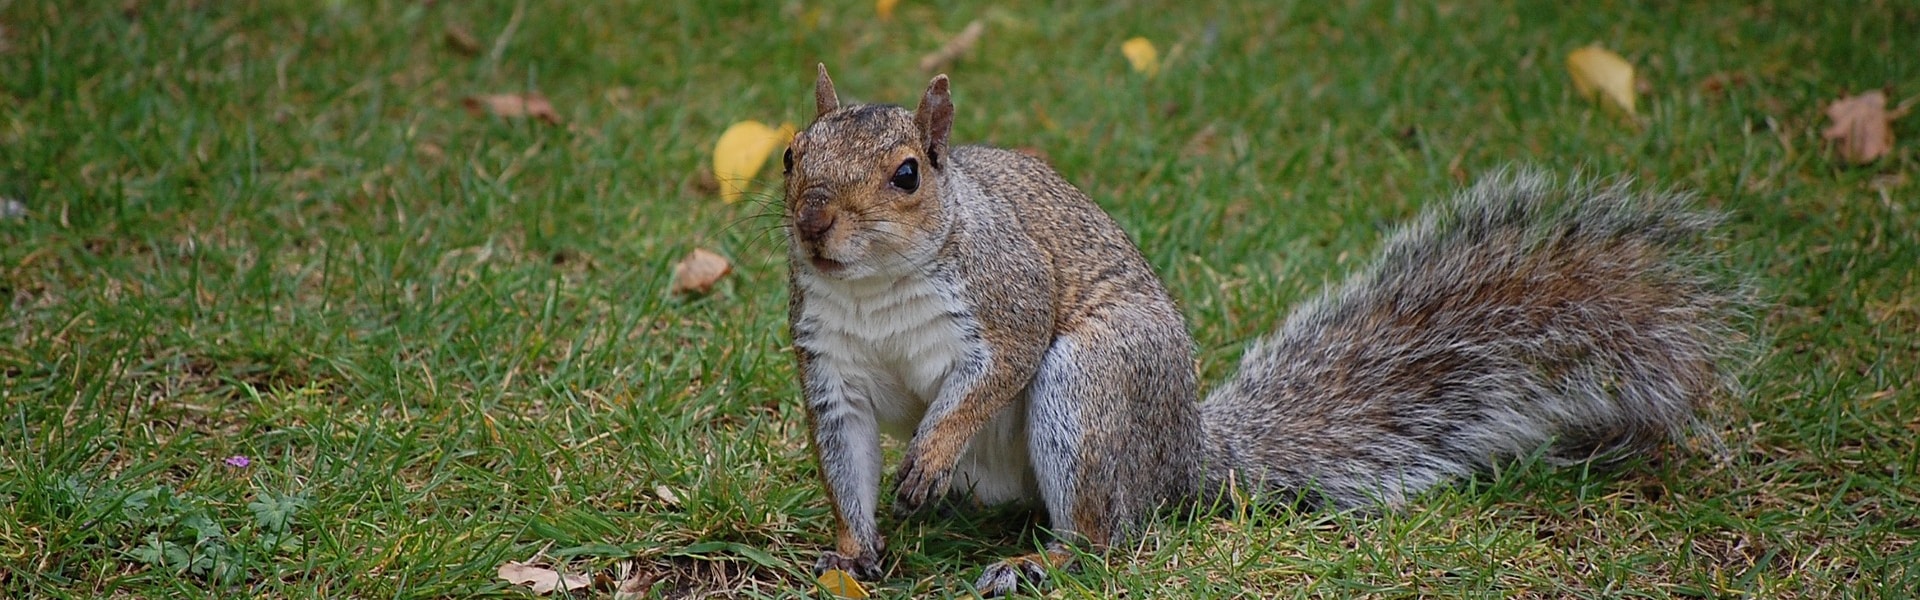 A grey squirrel